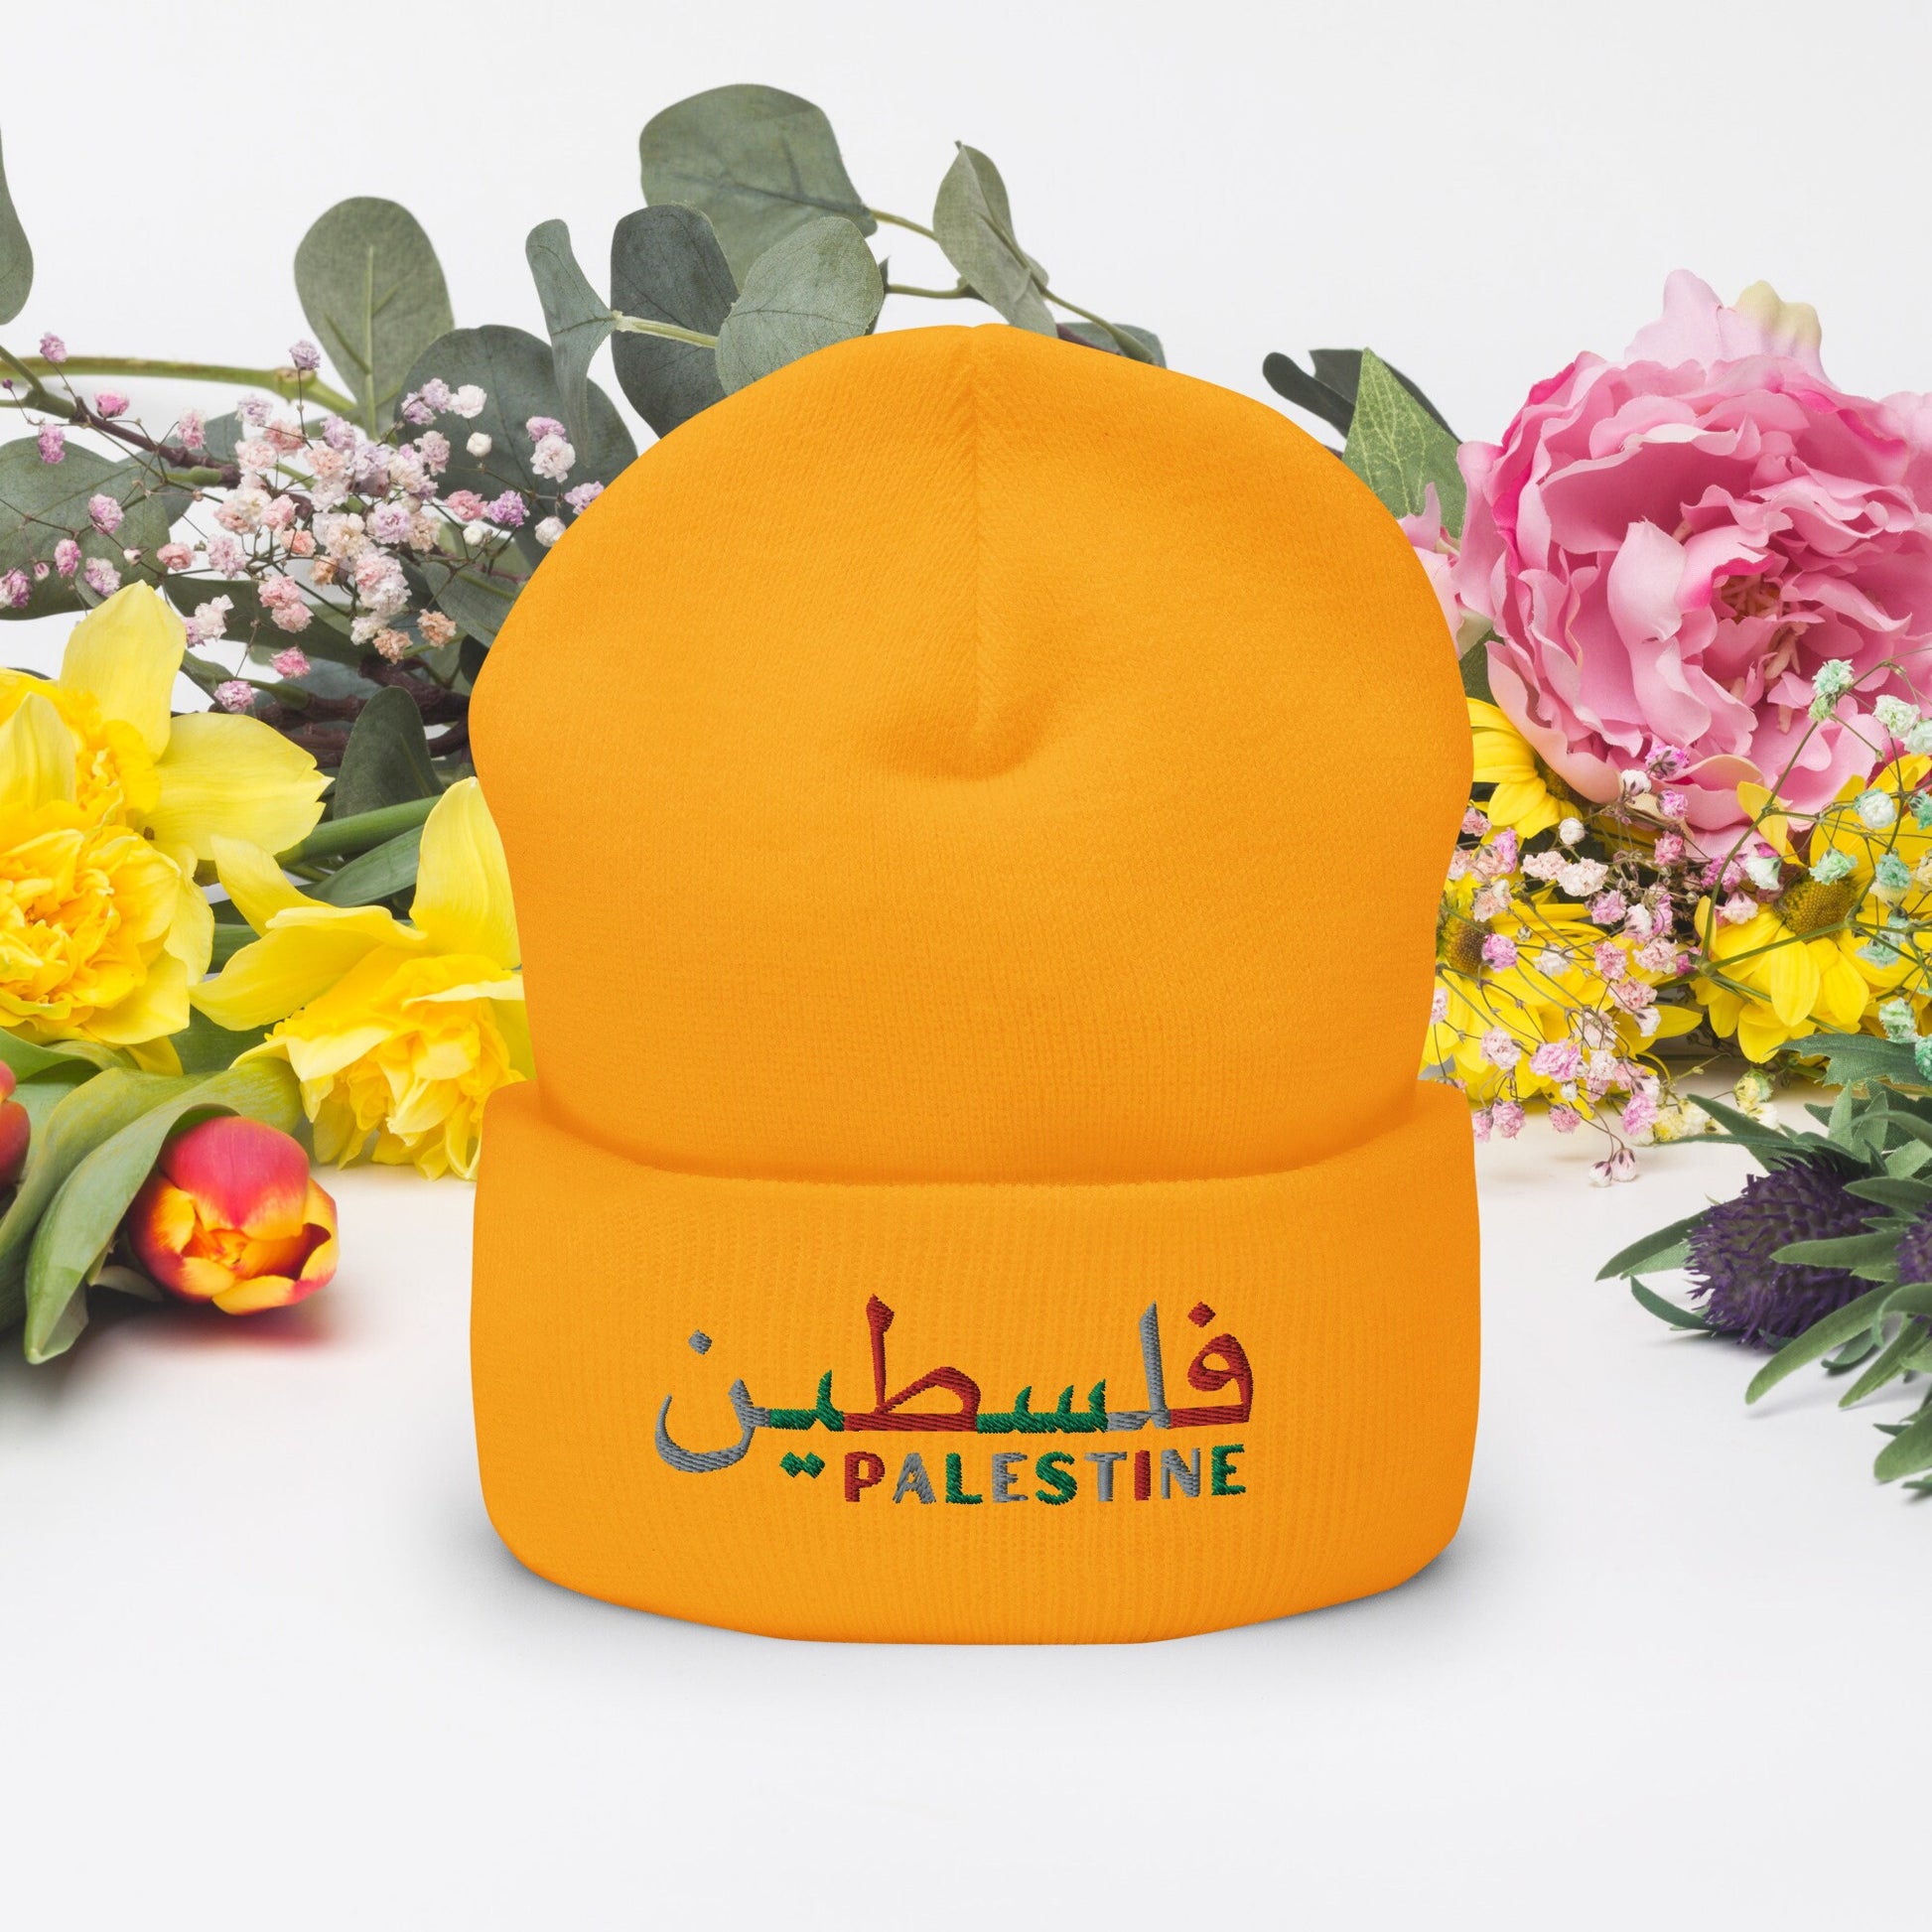 Embroidered Palestine Cuffed Beanie, Gaza Spport Hat